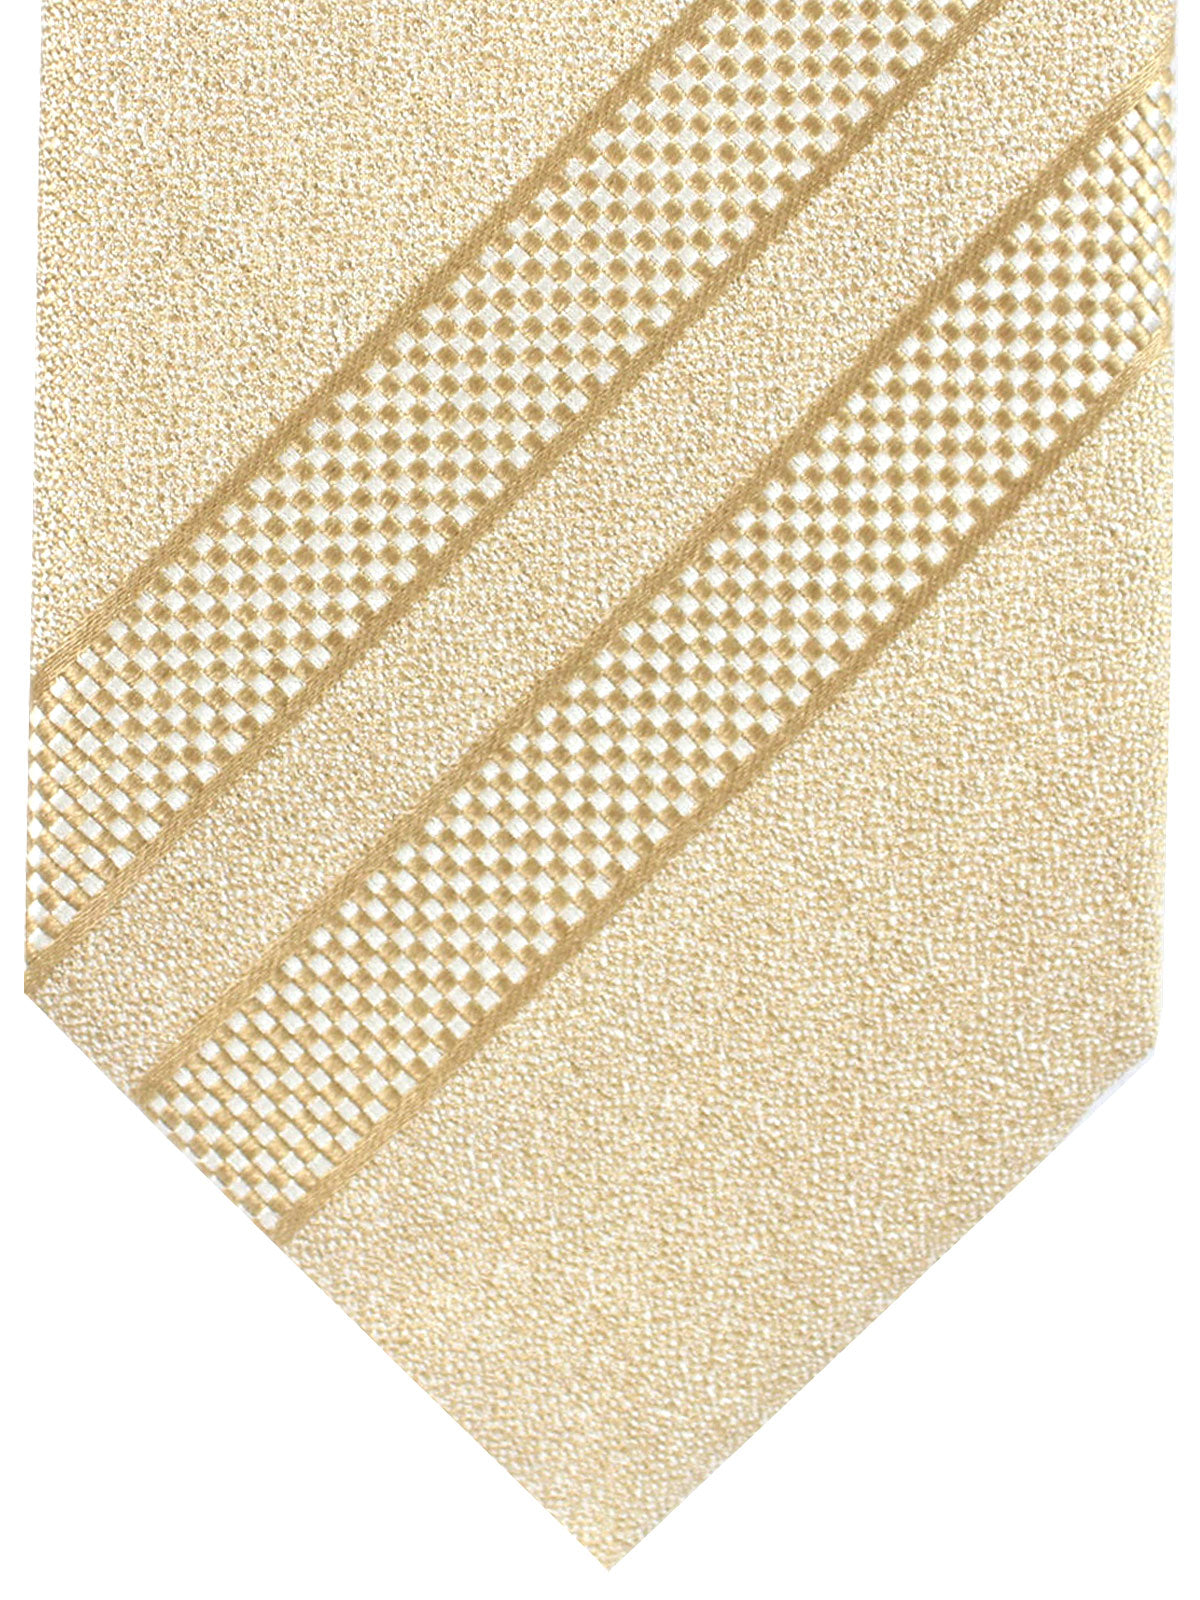 White Striped Metallic Gold Tie